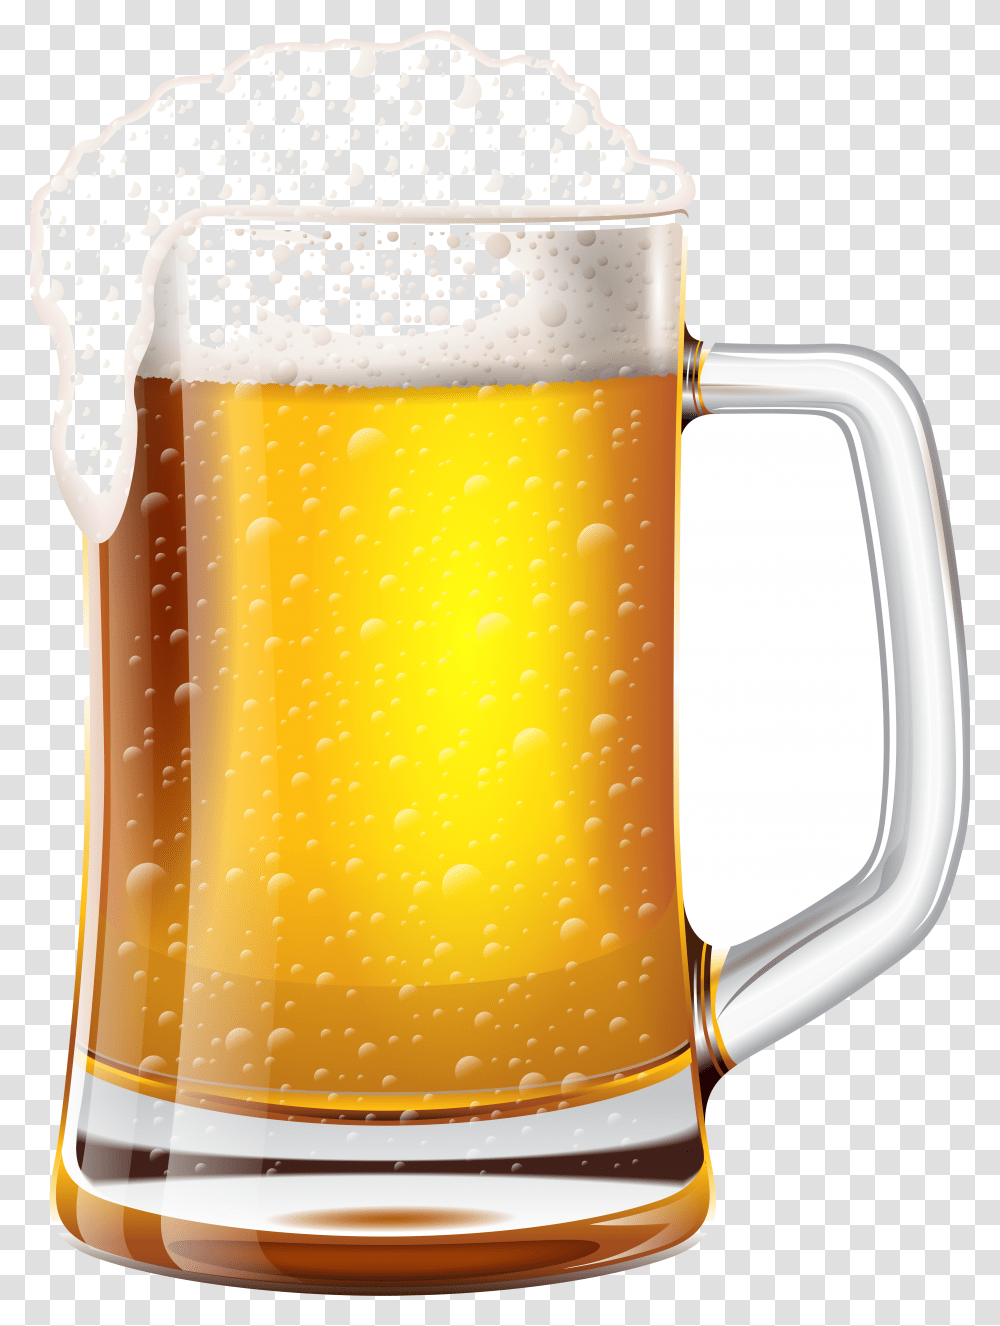 Mug Of Beer Beer Mug Clipart Transparent Png